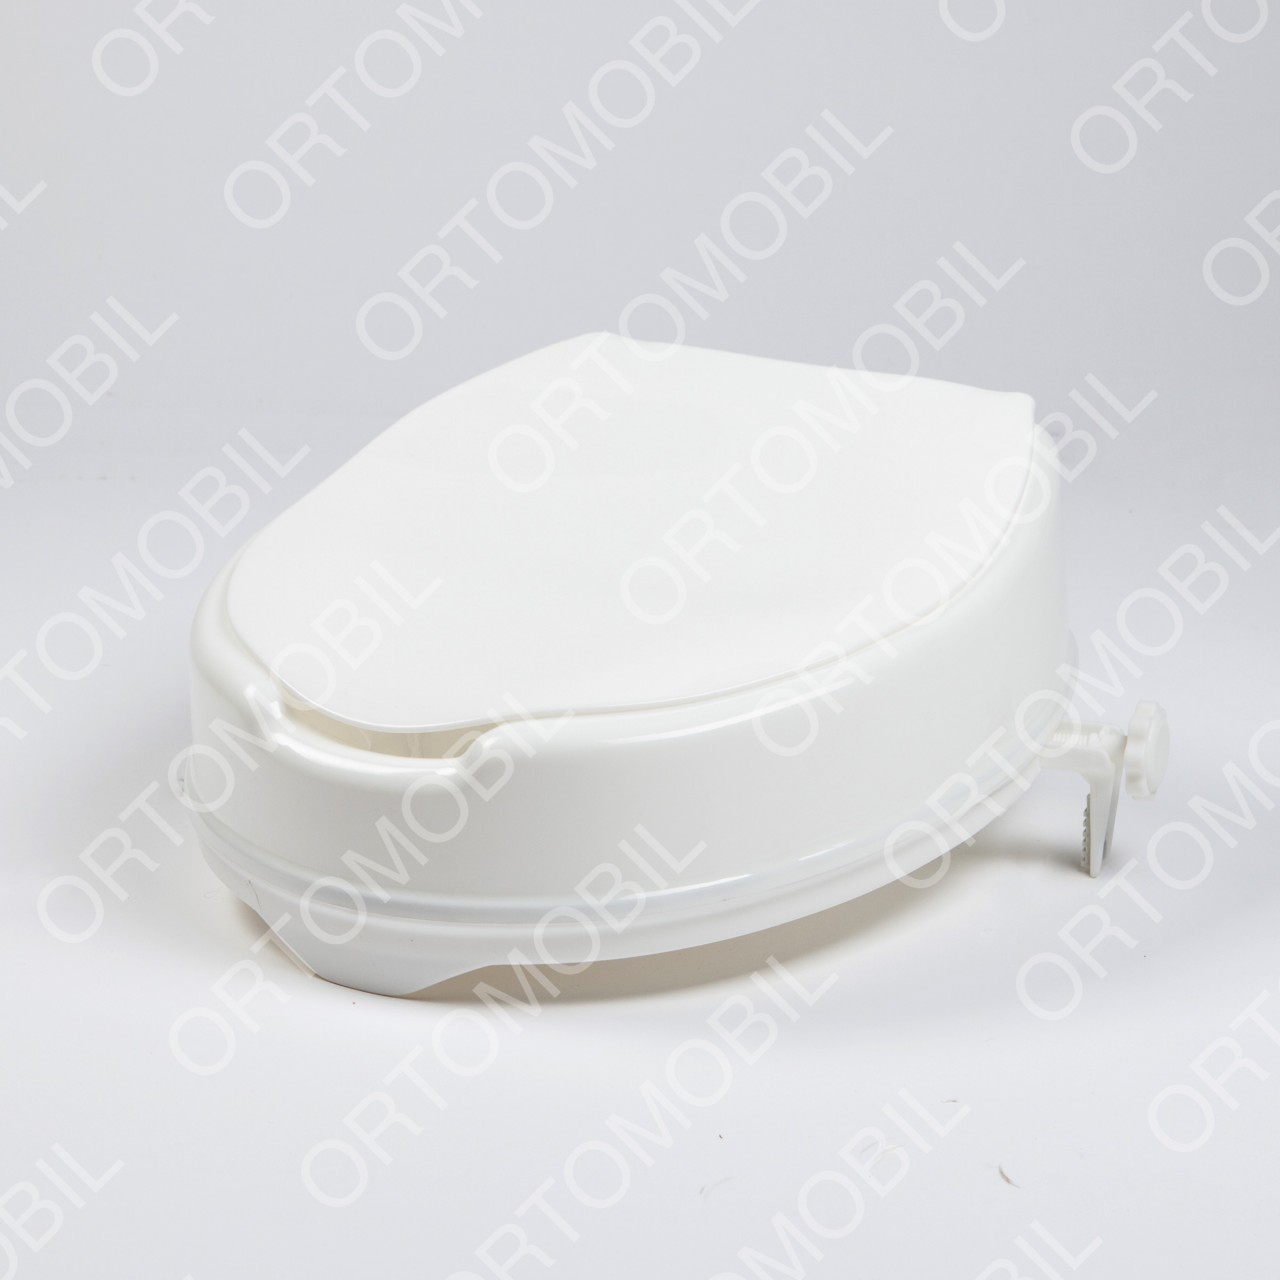 Inaltator WC de 10 cm cu capac Ortomobil 027060L4